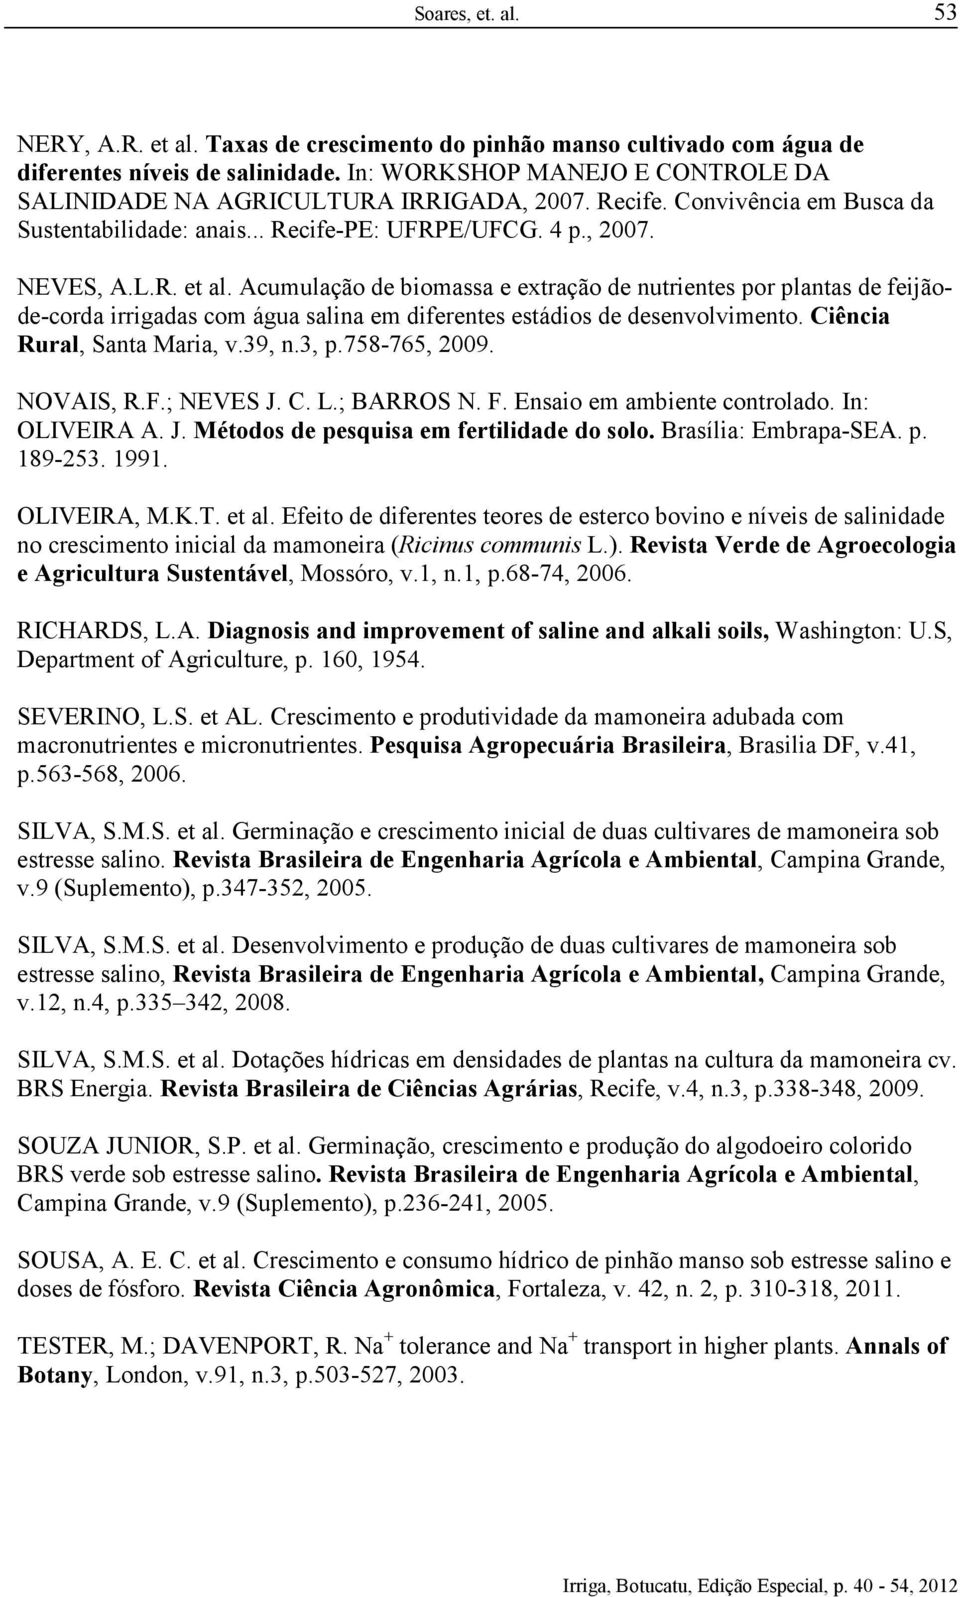 Acumulação de biomassa e extração de nutrientes por plantas de feijãode-corda irrigadas com água salina em diferentes estádios de desenvolvimento. Ciência Rural, Santa Maria, v.39, n.3, p.